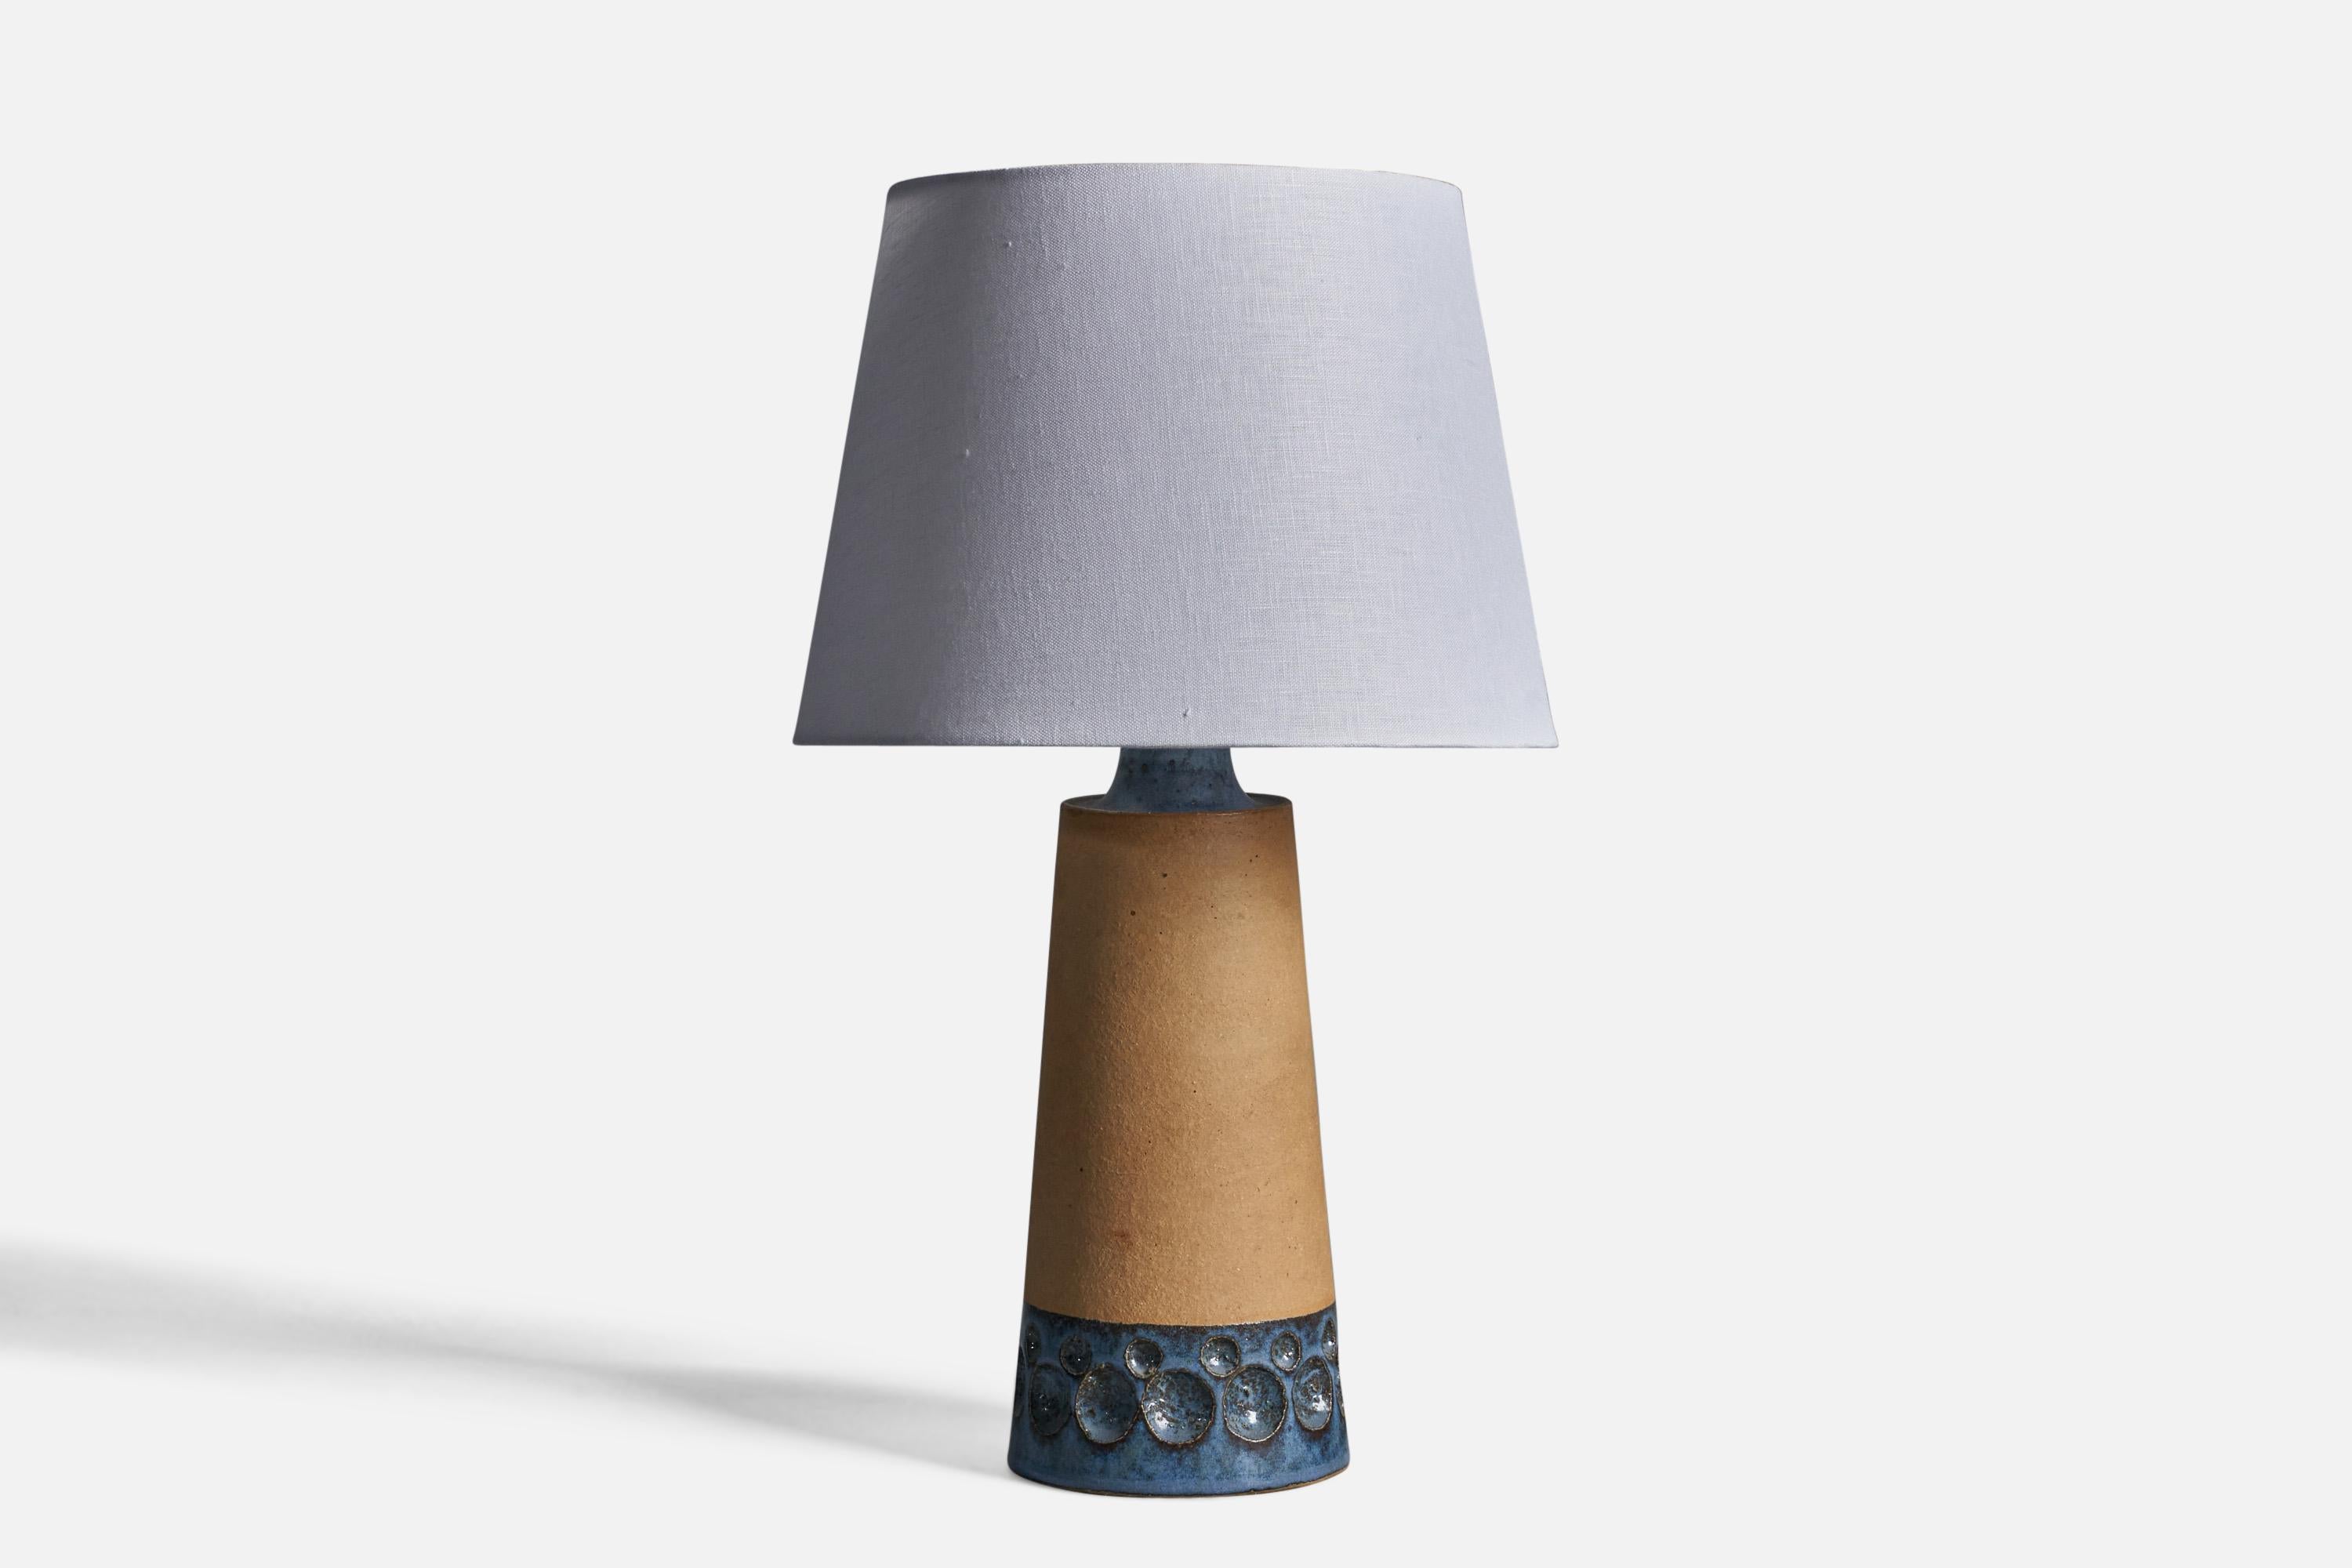 Halbglasierte Tischlampe aus blauem und beigem Steingut, entworfen und hergestellt von Michael Andersen, Bornholm, Dänemark, 1960er Jahre.

Abmessungen der Lampe (Zoll): 15,5